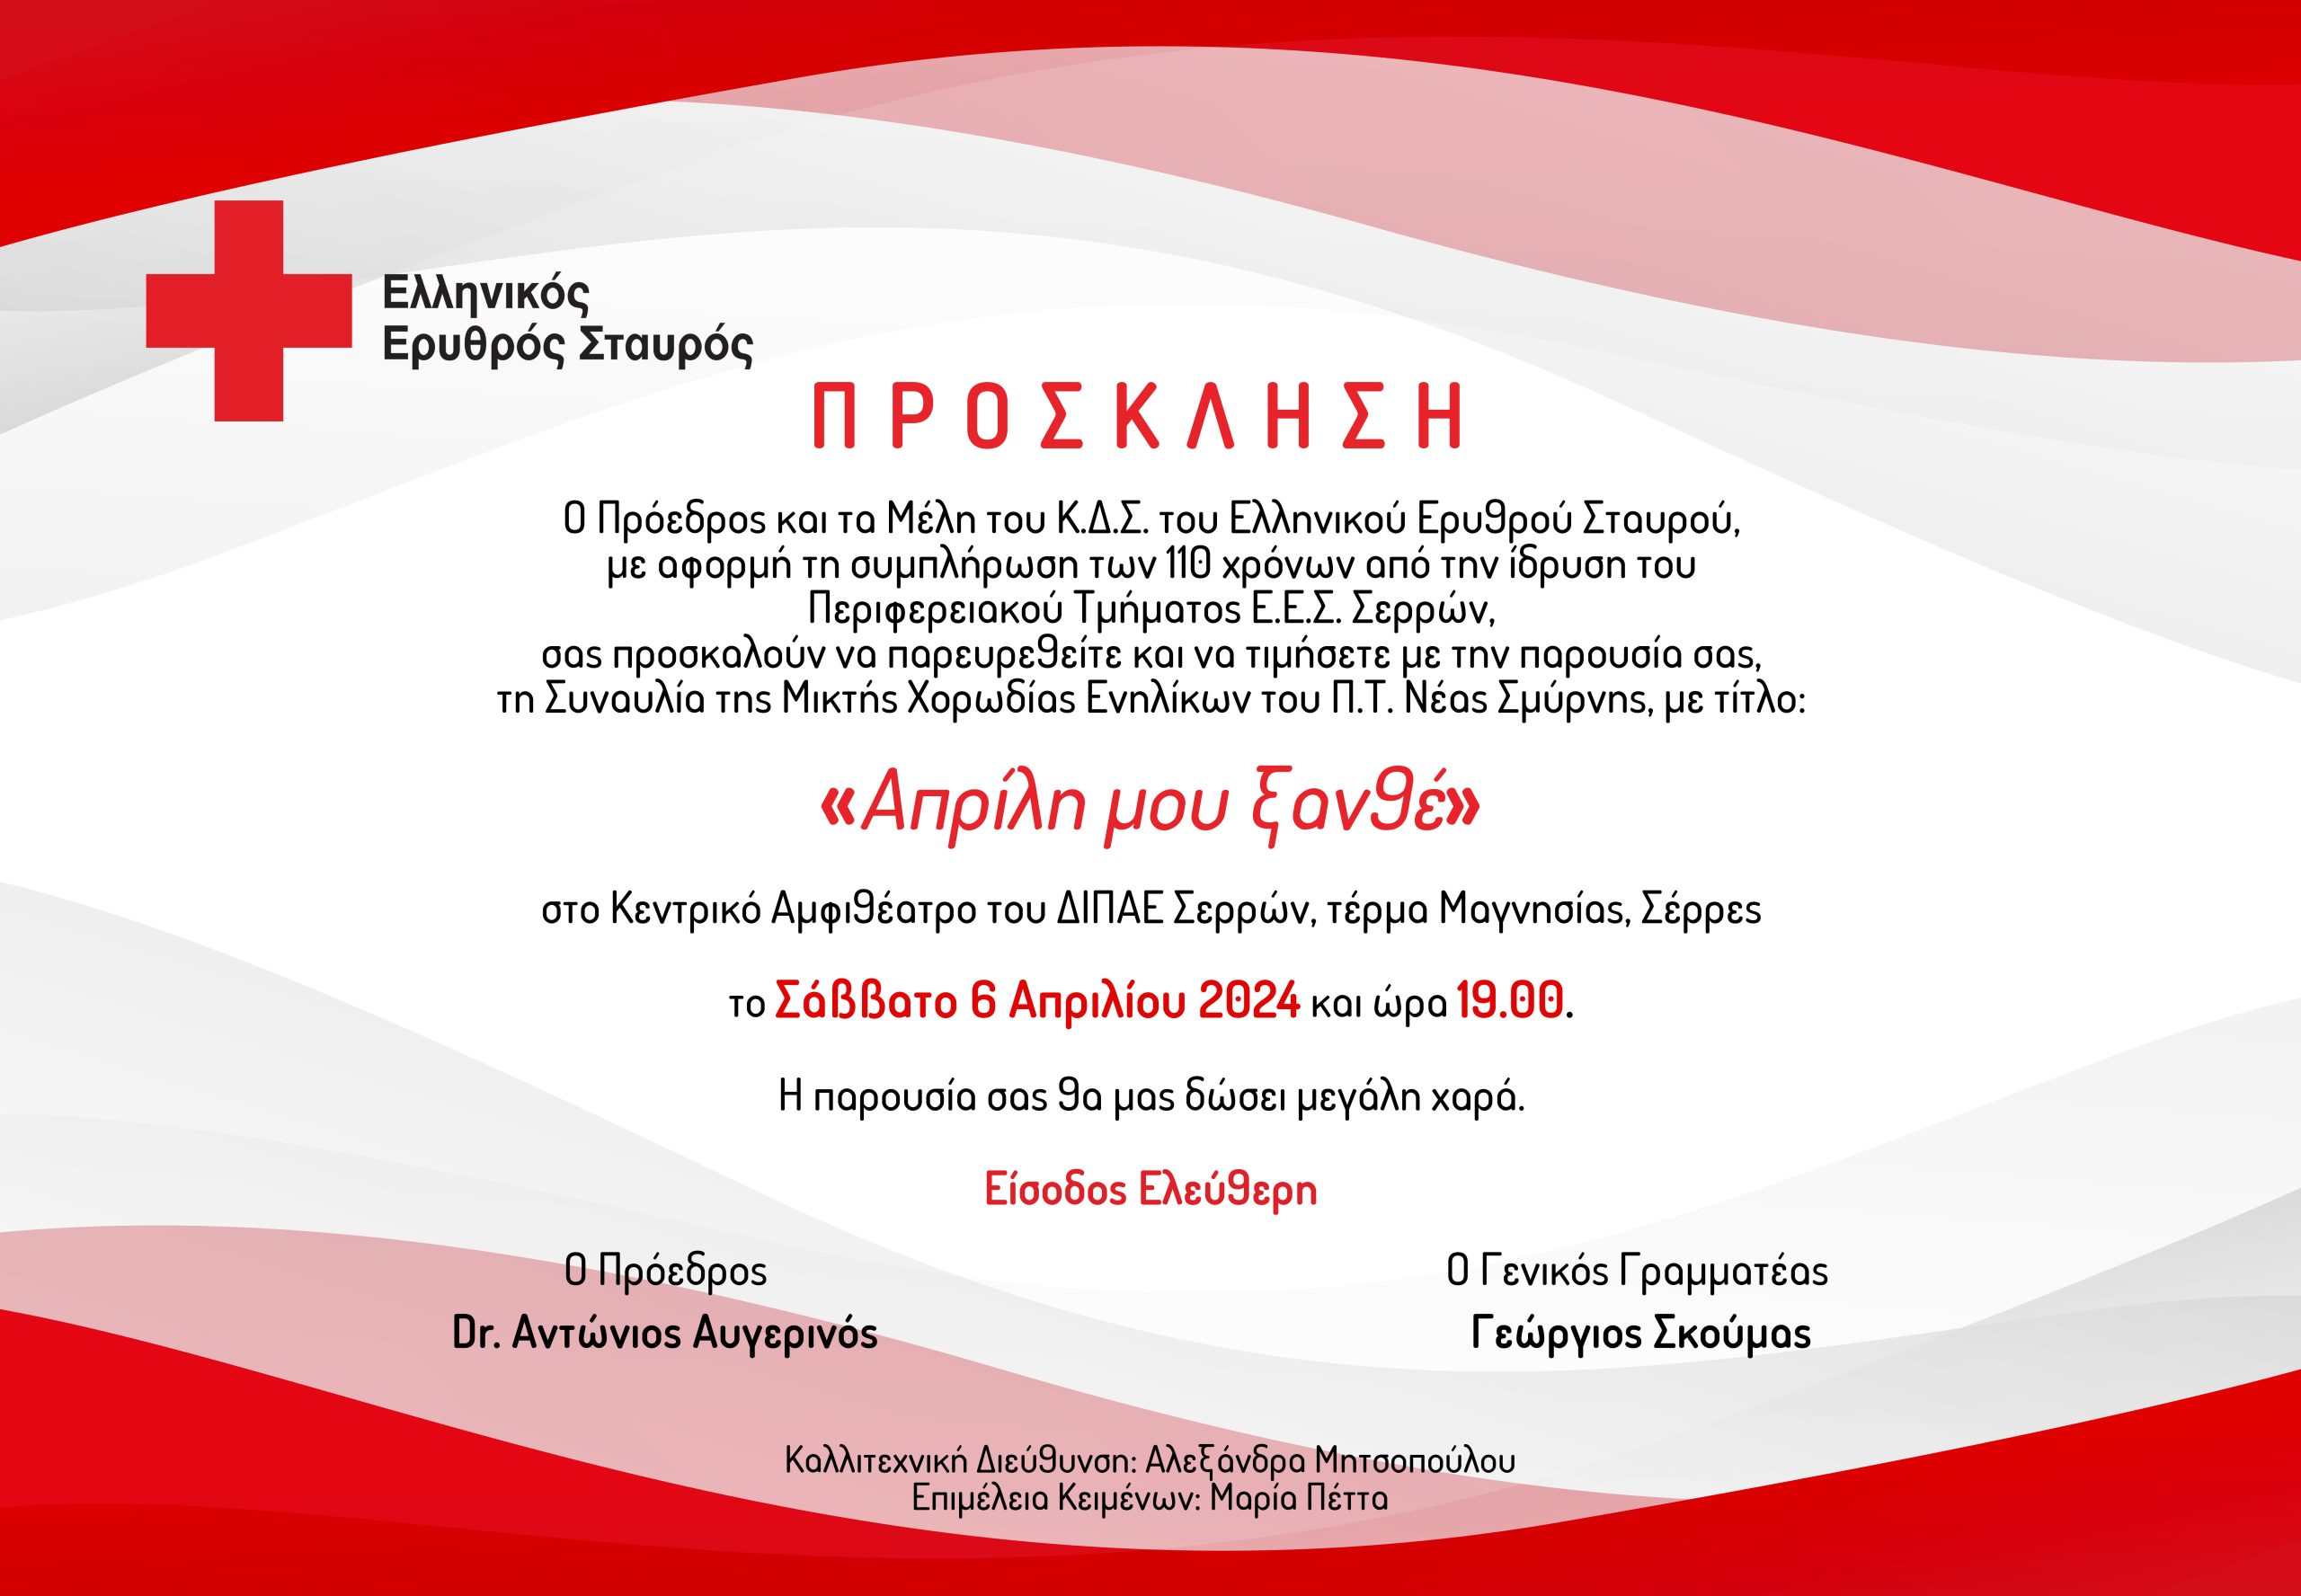 Ο Ελληνικός Ερυθρός Σταυρός διοργανώνει μεγάλη ανοιχτή συναυλία για το κοινό στο Κεντρικό Αμφιθέατρο του ΔΙΠΑΕ Σερρών